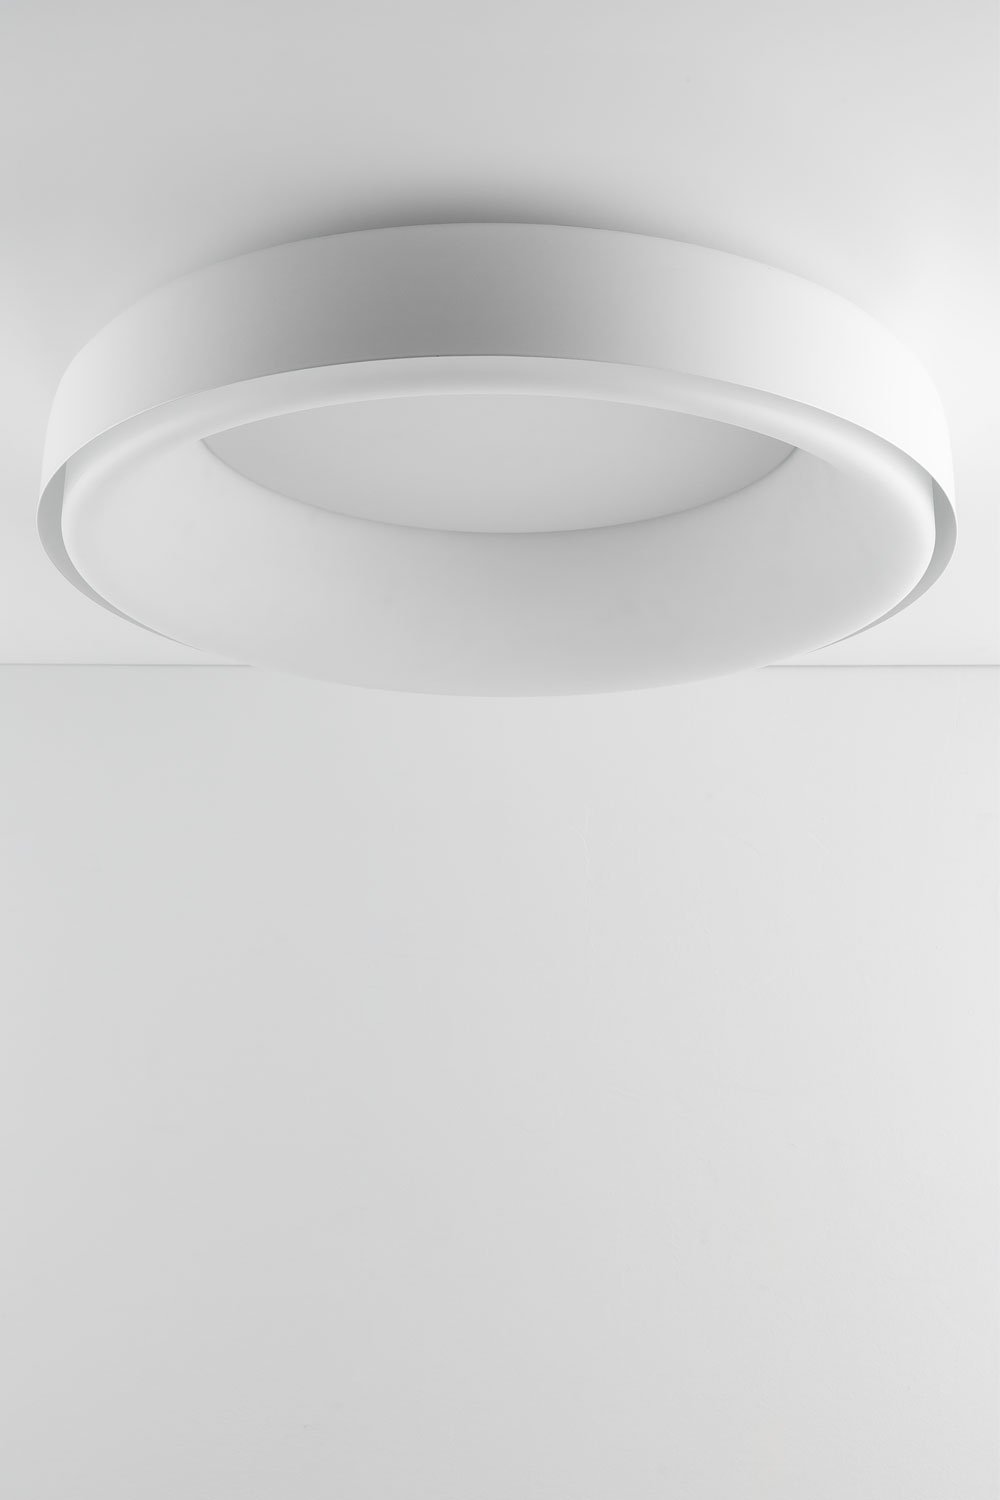 Plafonnier LED en métal Ramize  , image de la galerie 1